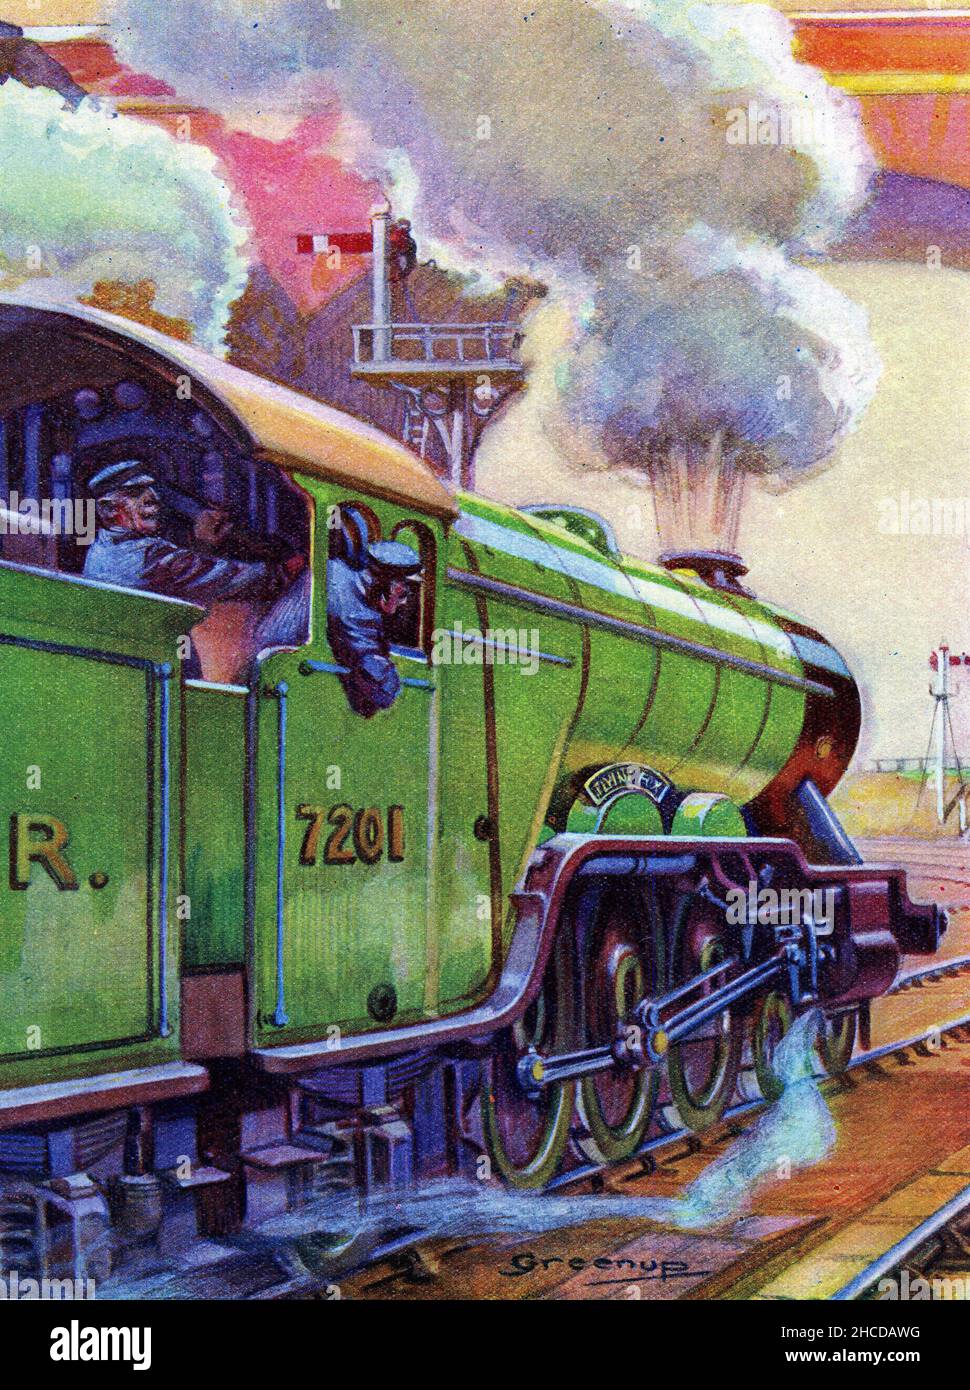 La locomotive à vapeur Flying Fox.En 1925, le London & North Eastern Railway (LNER) a commencé une tradition de dénomination des locomotives après avoir remporté des chevaux de course, dont Flying Fox, un champion britannique de course à cheval de race Thoroughbred qui a remporté le Triple Crown anglais 1899 et a été la première sire en France trois fois. Banque D'Images